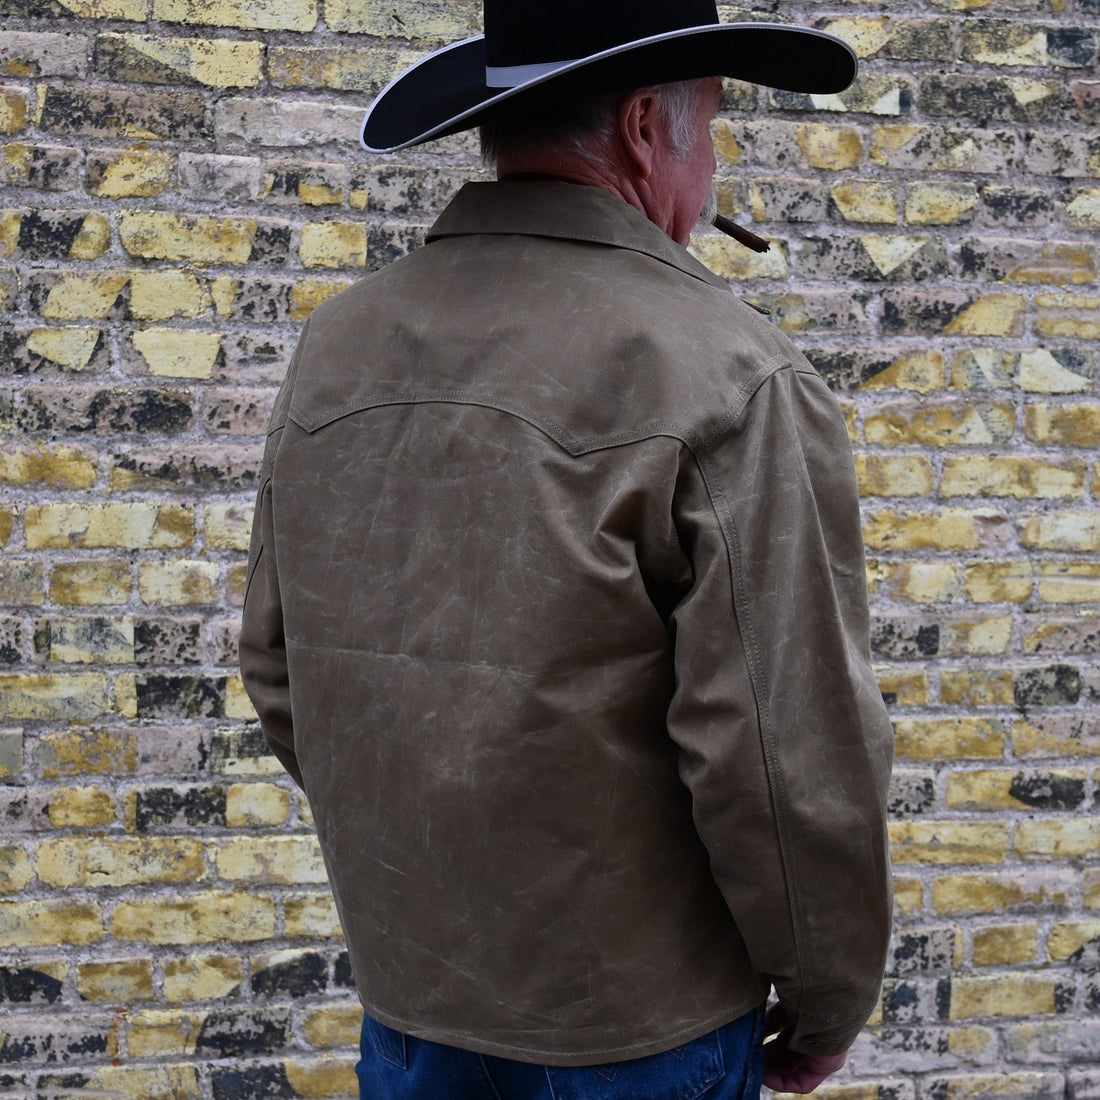 Rangewax Mesquite Jacket view of back of jacket size large